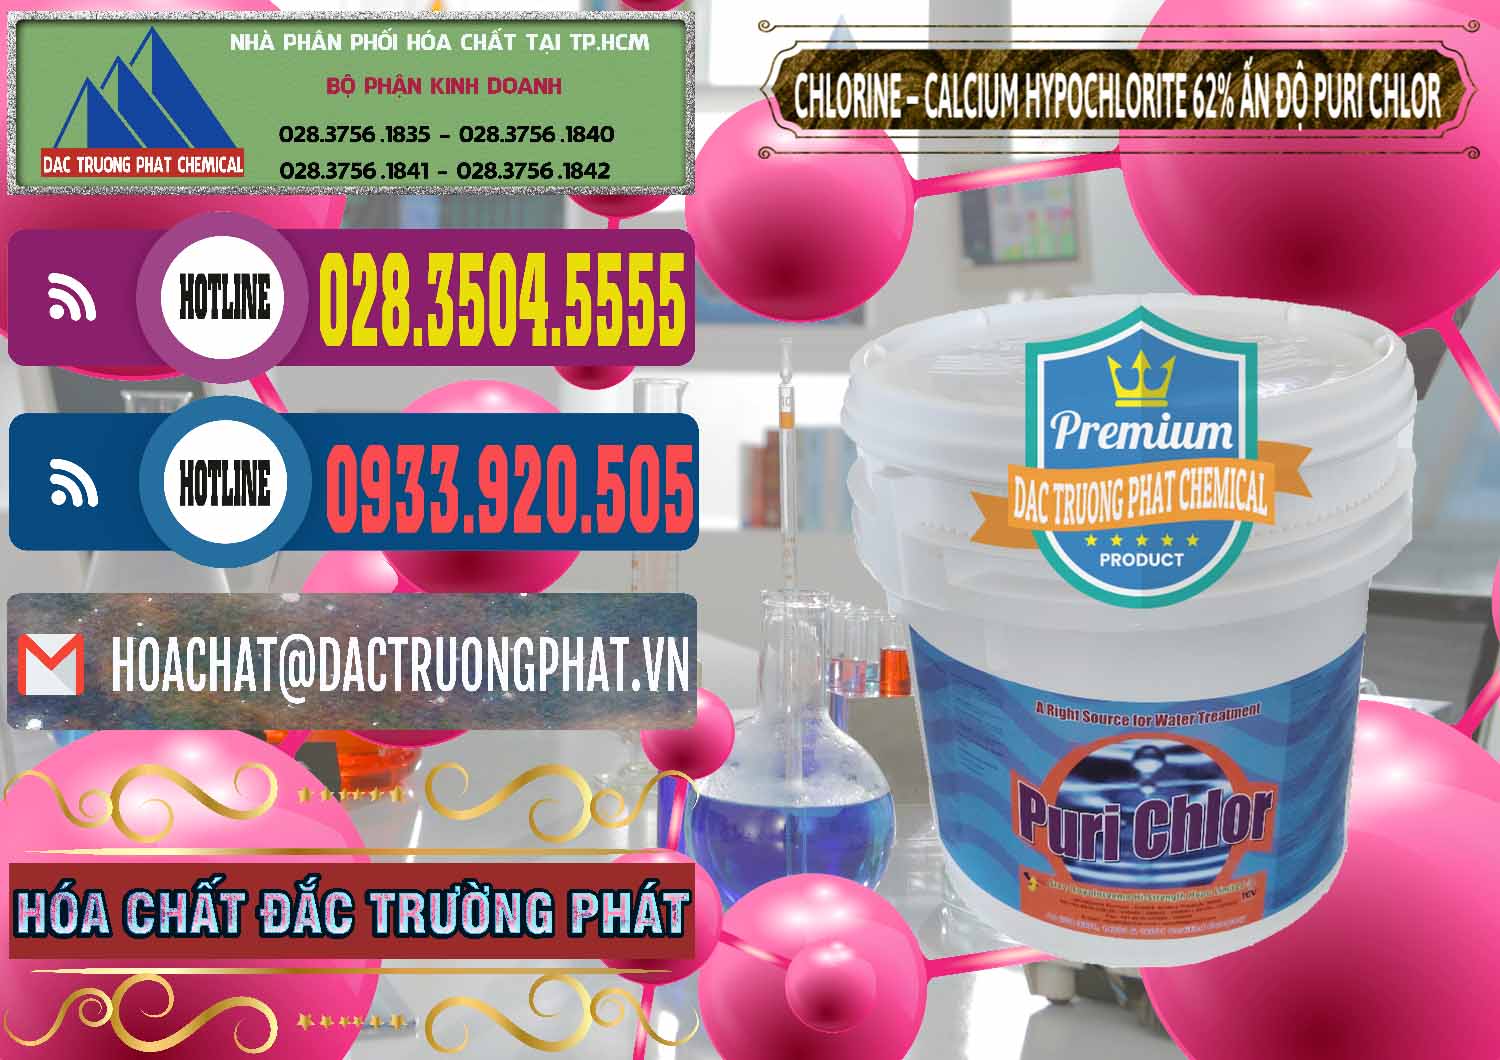 Nhà nhập khẩu _ bán Chlorine – Clorin 62% Puri Chlo Ấn Độ India - 0052 - Chuyên bán _ phân phối hóa chất tại TP.HCM - muabanhoachat.com.vn